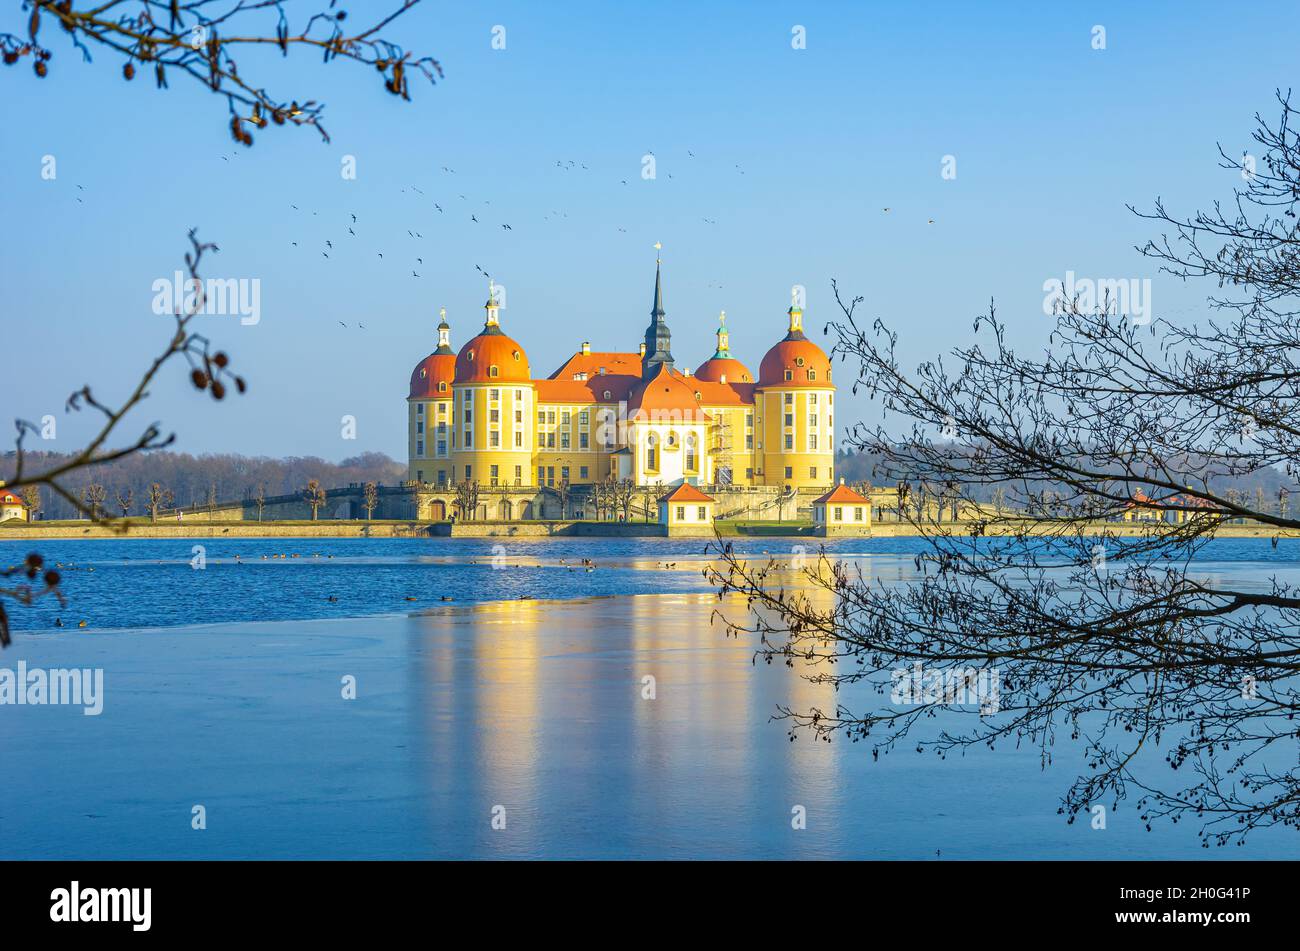 Moritzburg bei Dresden, Sachsen, Deutschland: Winterlich Schloss Moritzburg aus dem Nordwesten, umgeben vom teilweise gefrorenen Schlossteich. Stockfoto